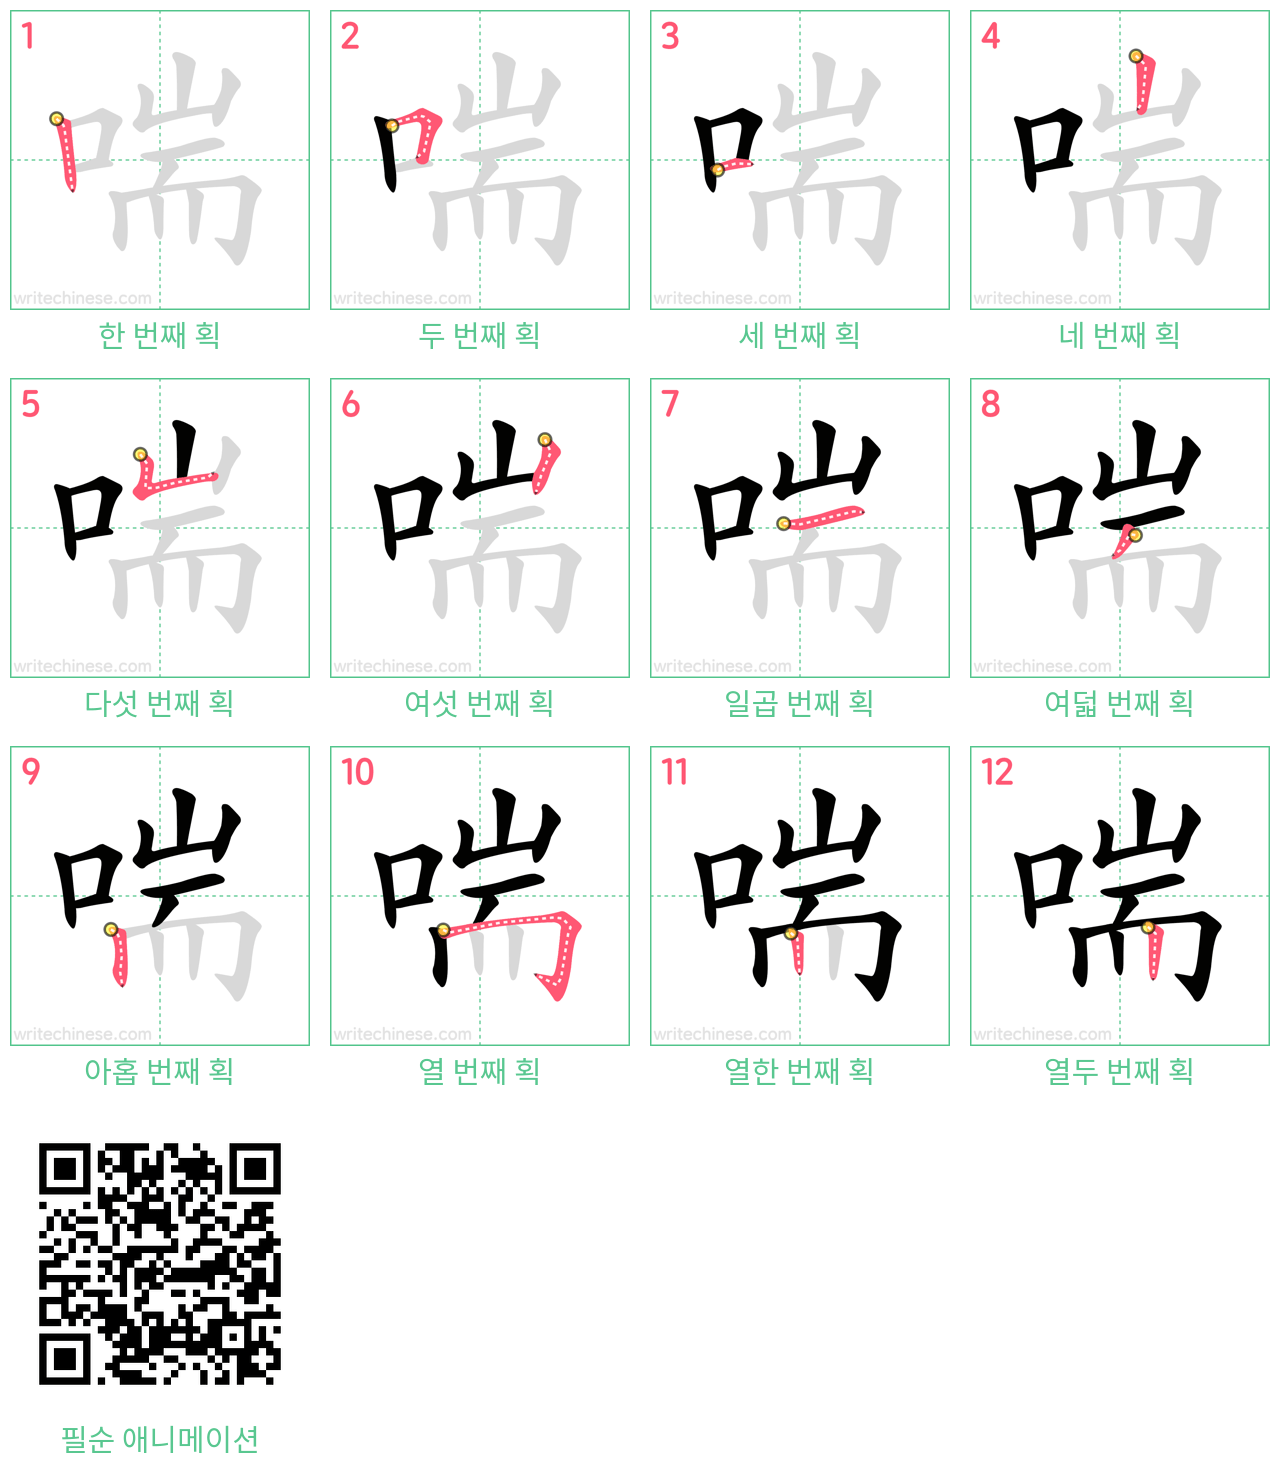 喘 step-by-step stroke order diagrams